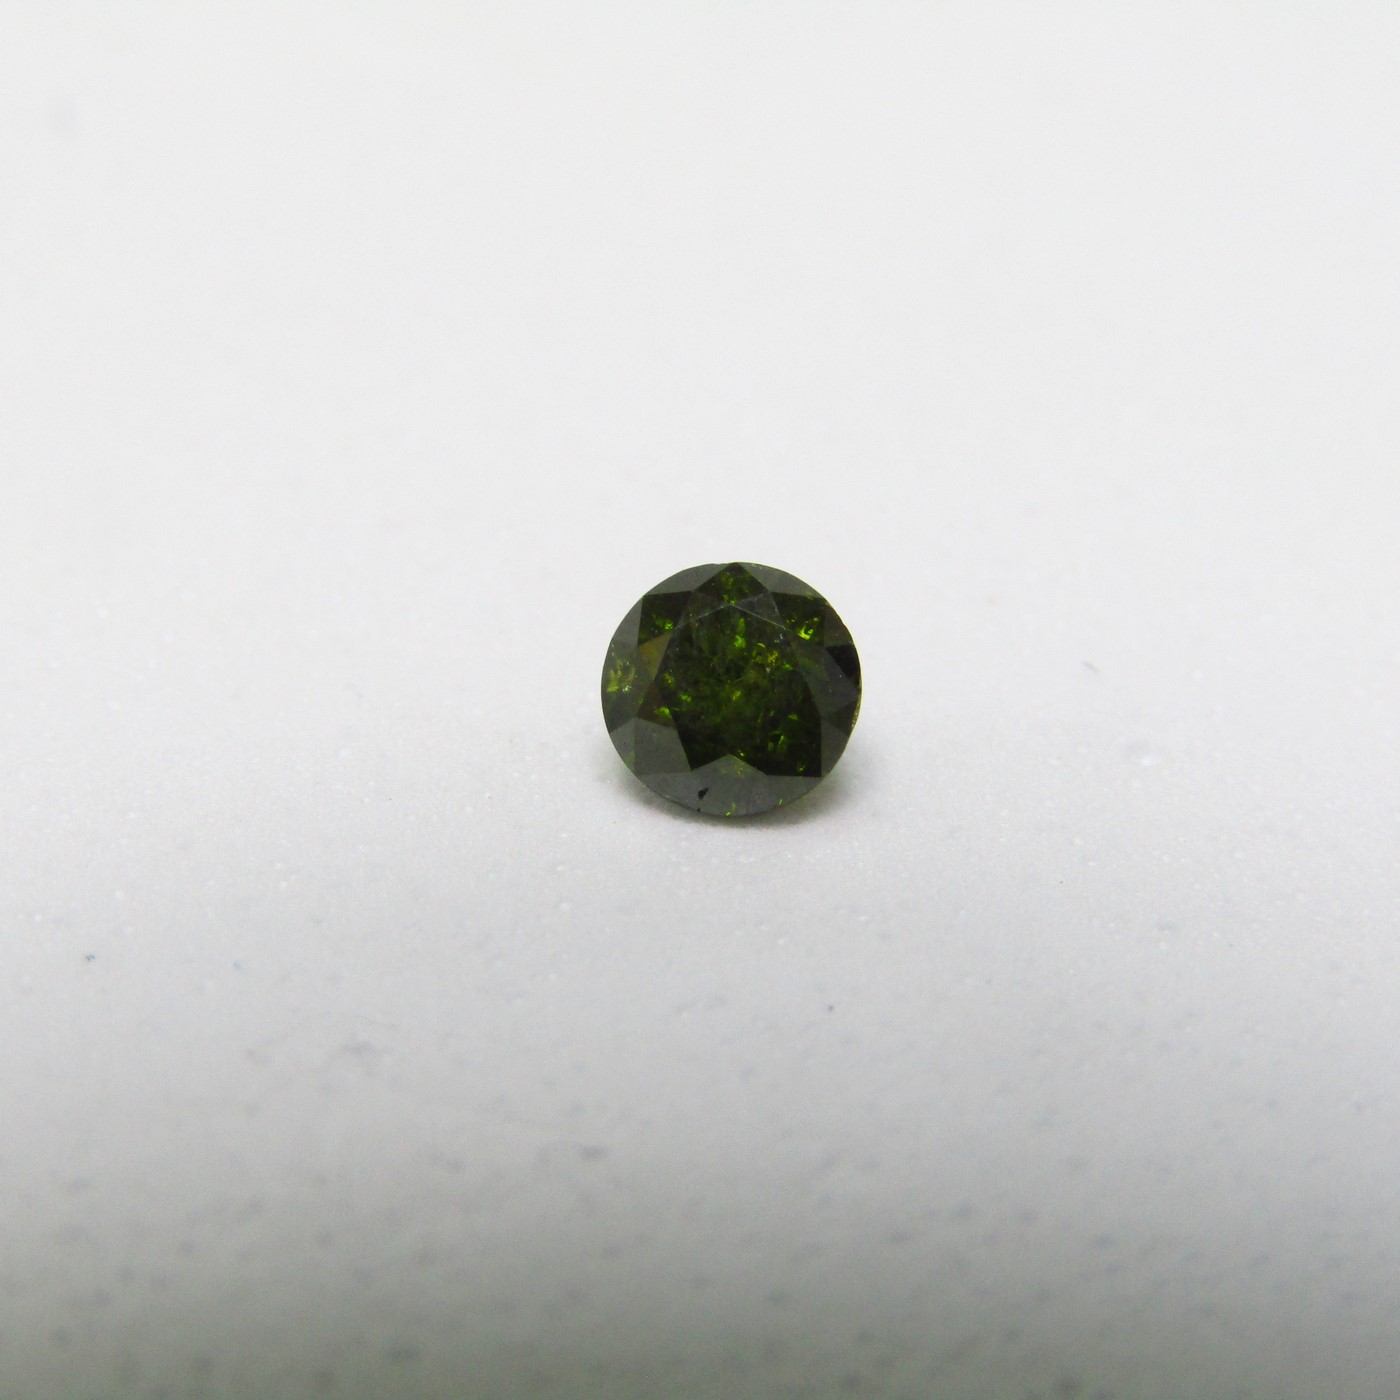 Diamant naturel de 0,45 ct. Taille: brillant. Couleur: Vert olive fantaisie. Pureté: P1. Aucune donnée de traitement.